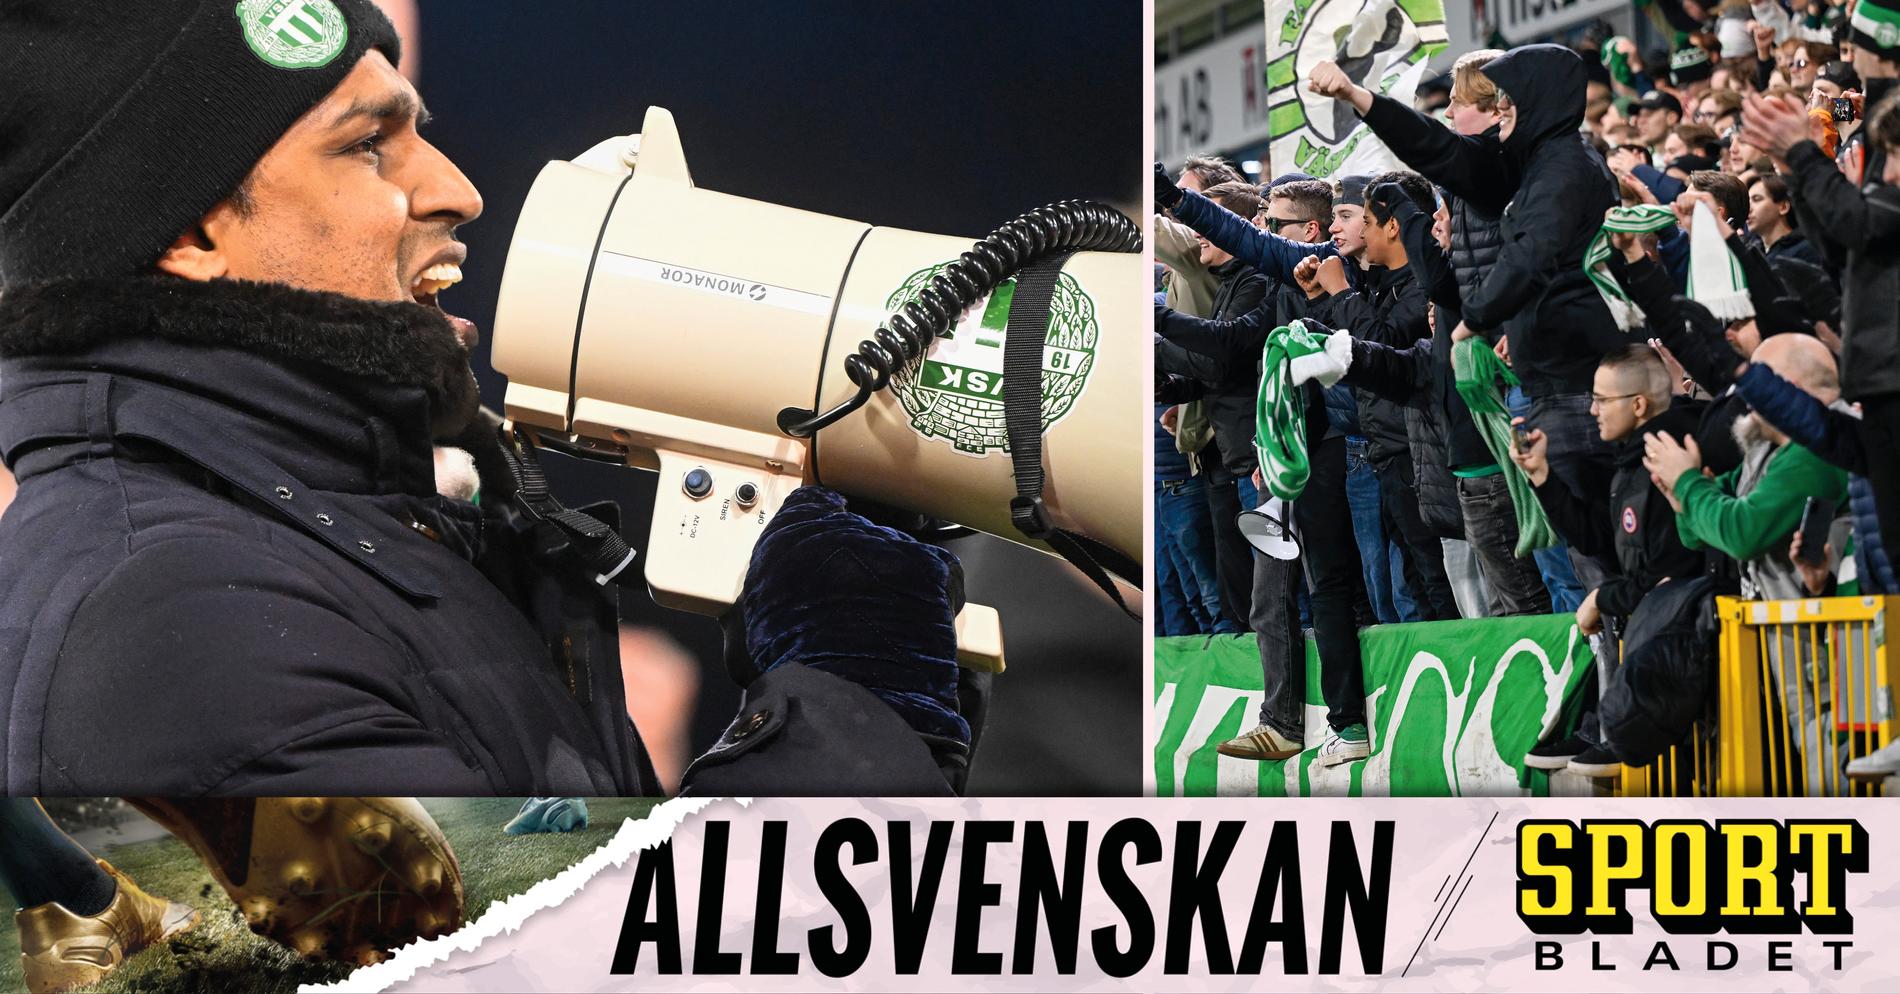 Kalle Karlssons efterlängtade jubel: ”Fick gnugga sig i ögonen” • Podden Sportbladet Allsvenskan med nytt avsnitt